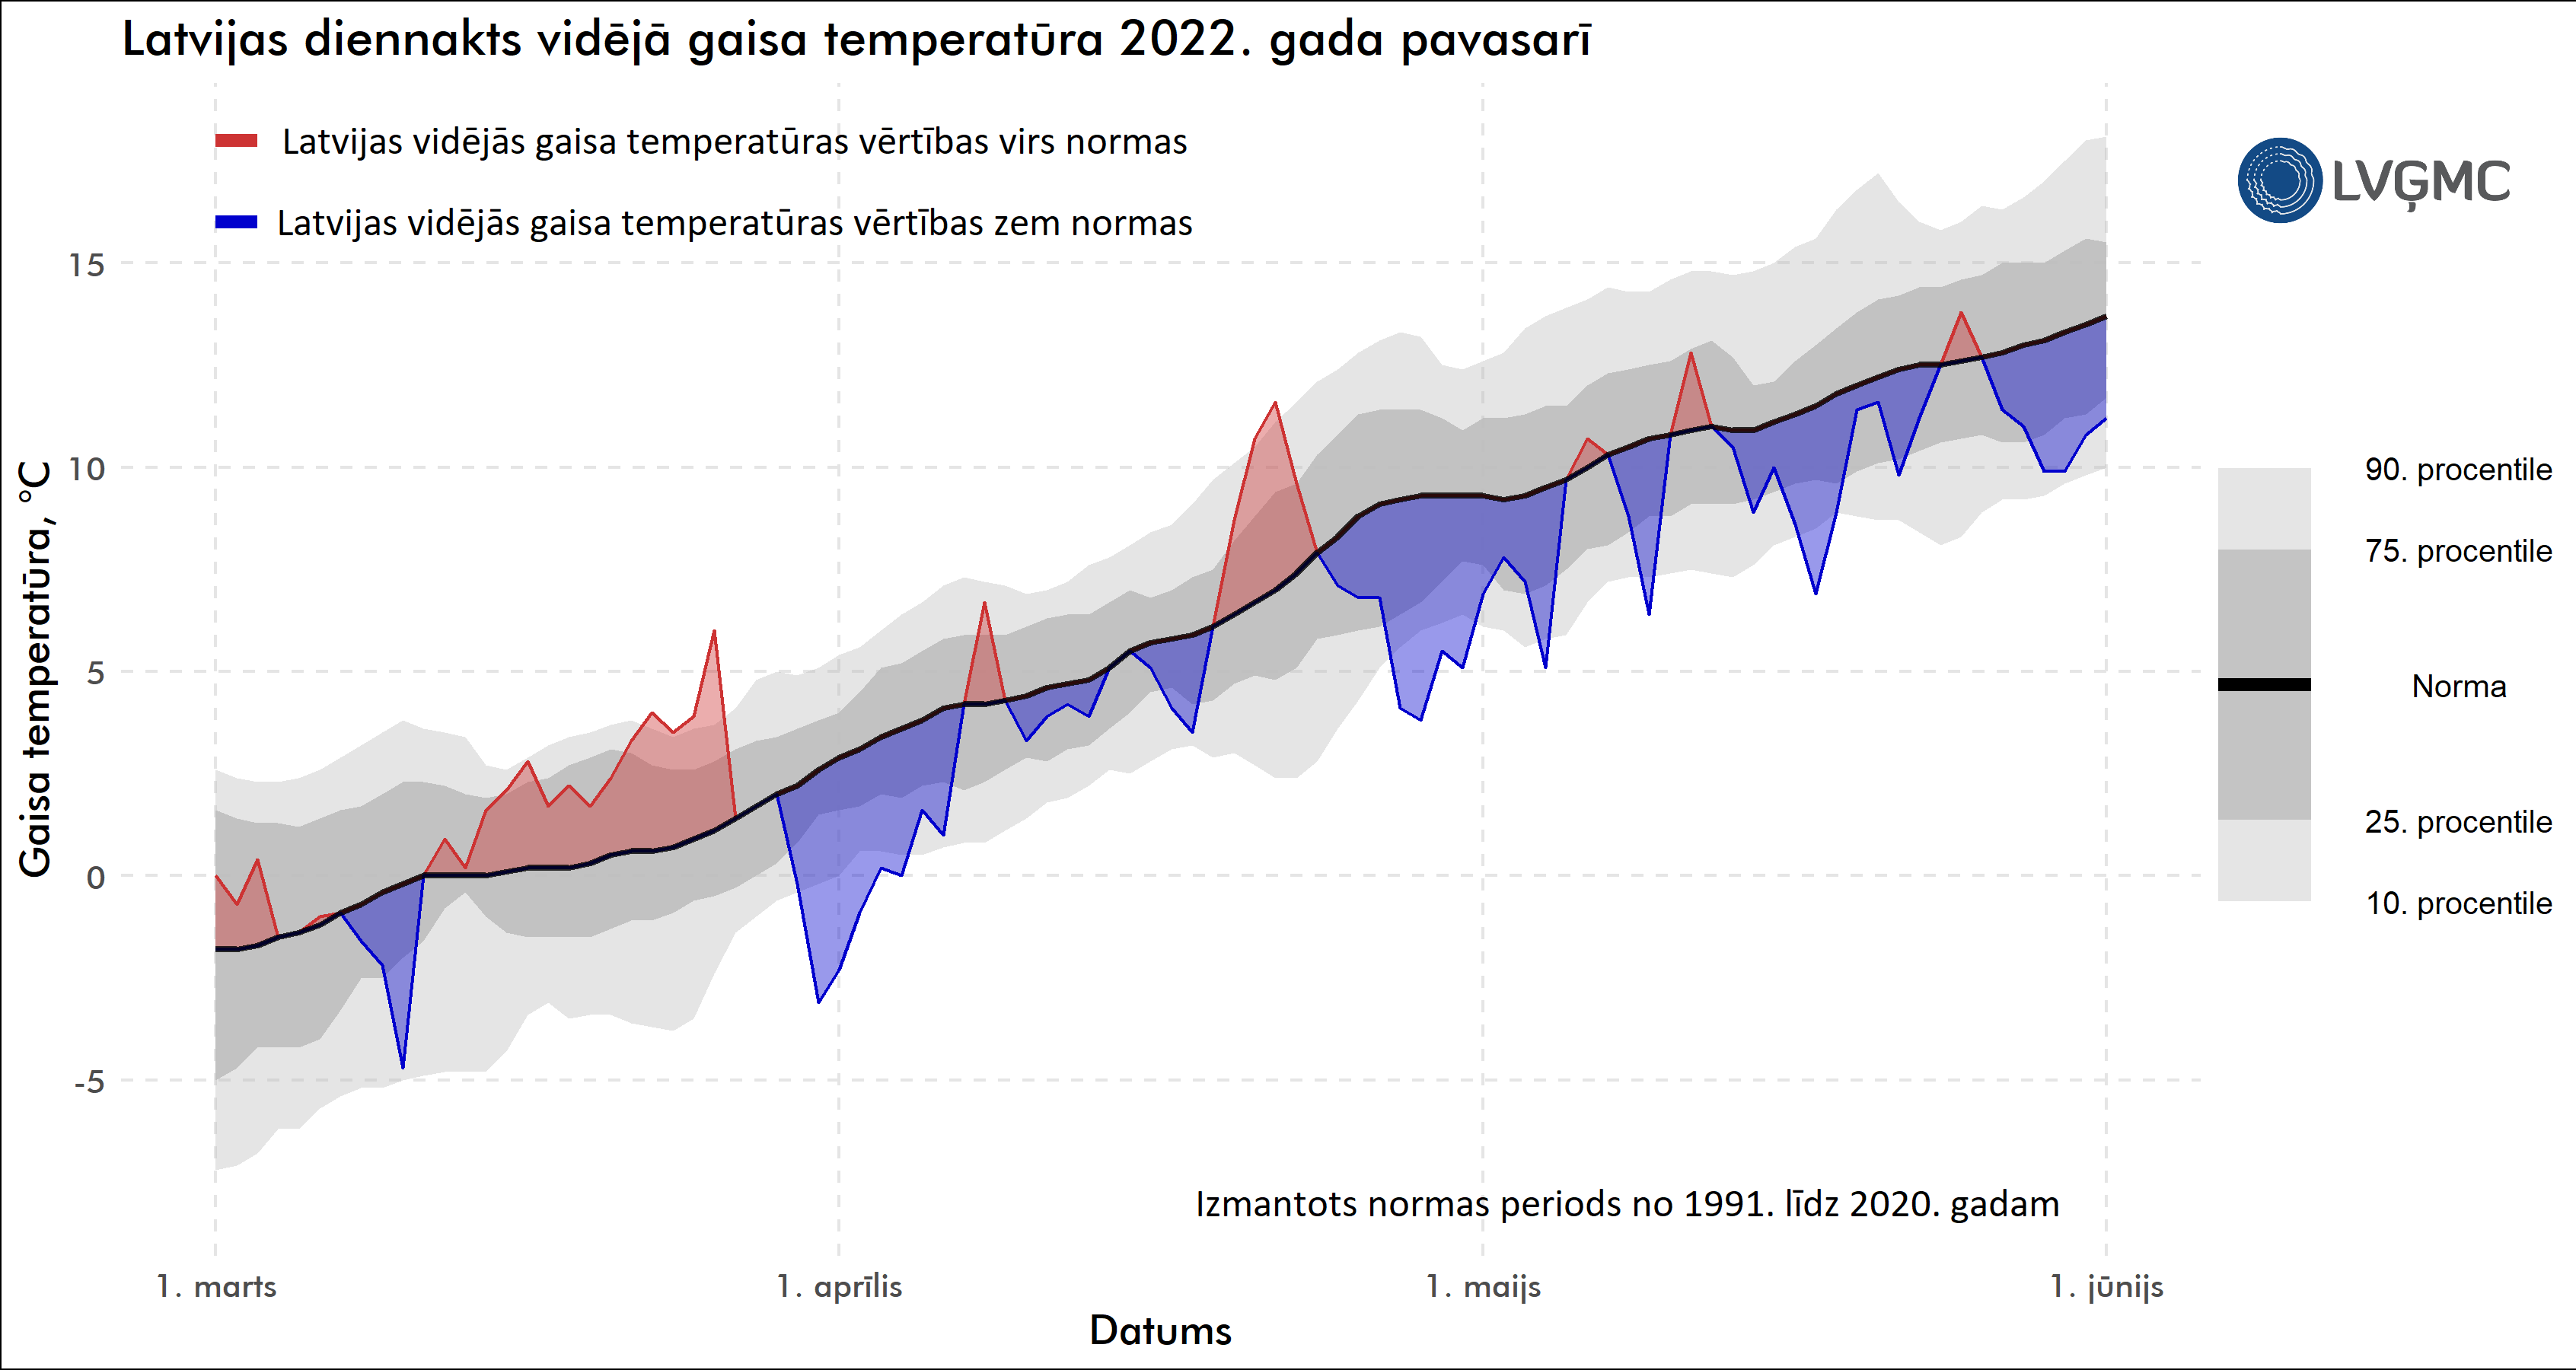 Gaisa temperatūras novirze laikā no normas 2022. gada pavasarī, °C